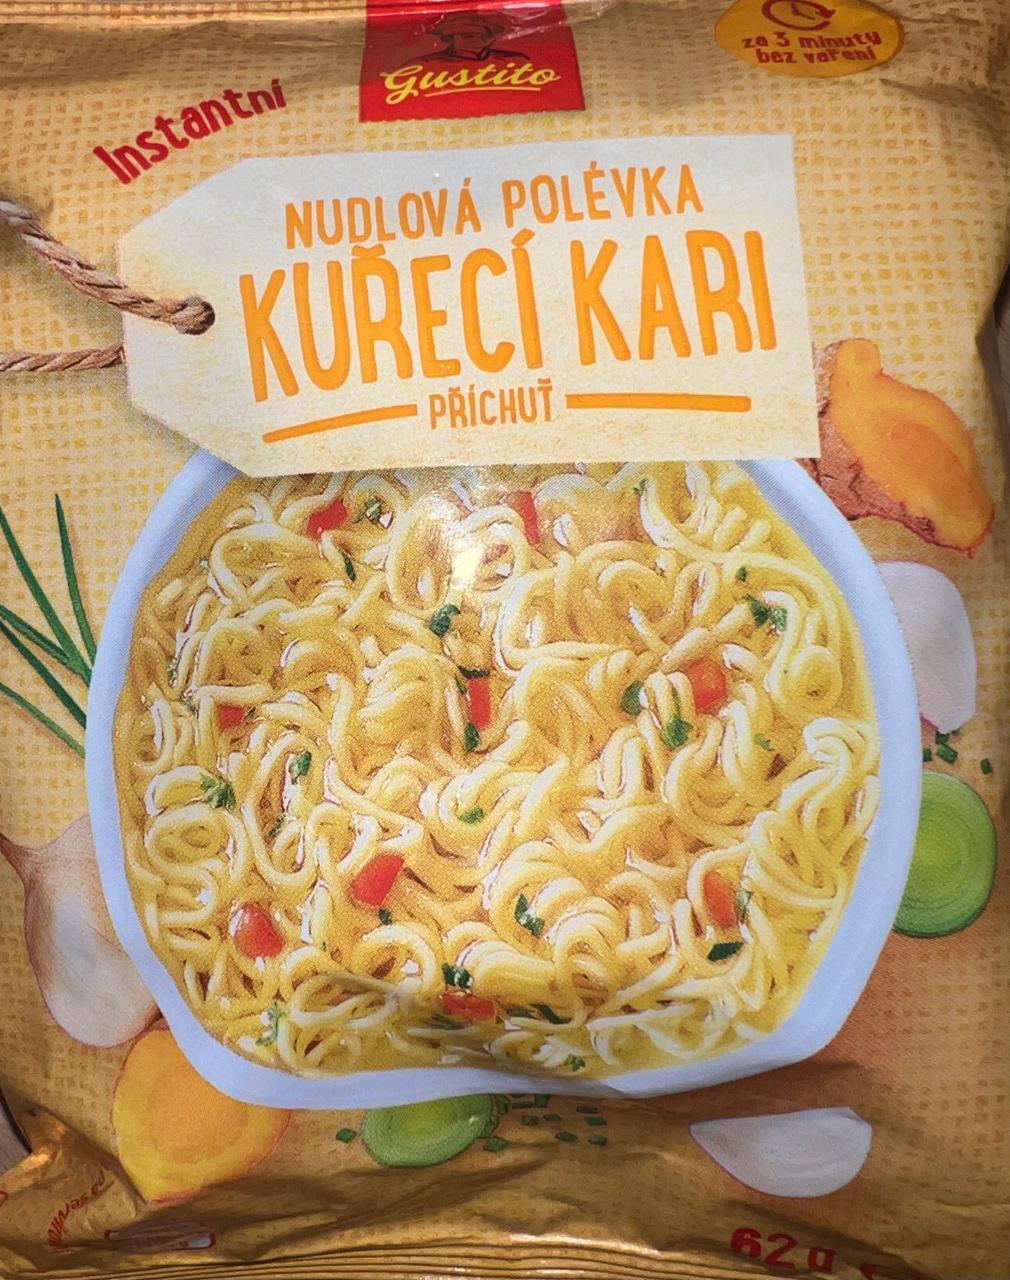 Fotografie - Nudlová polévka Kuřecí kari Gustito